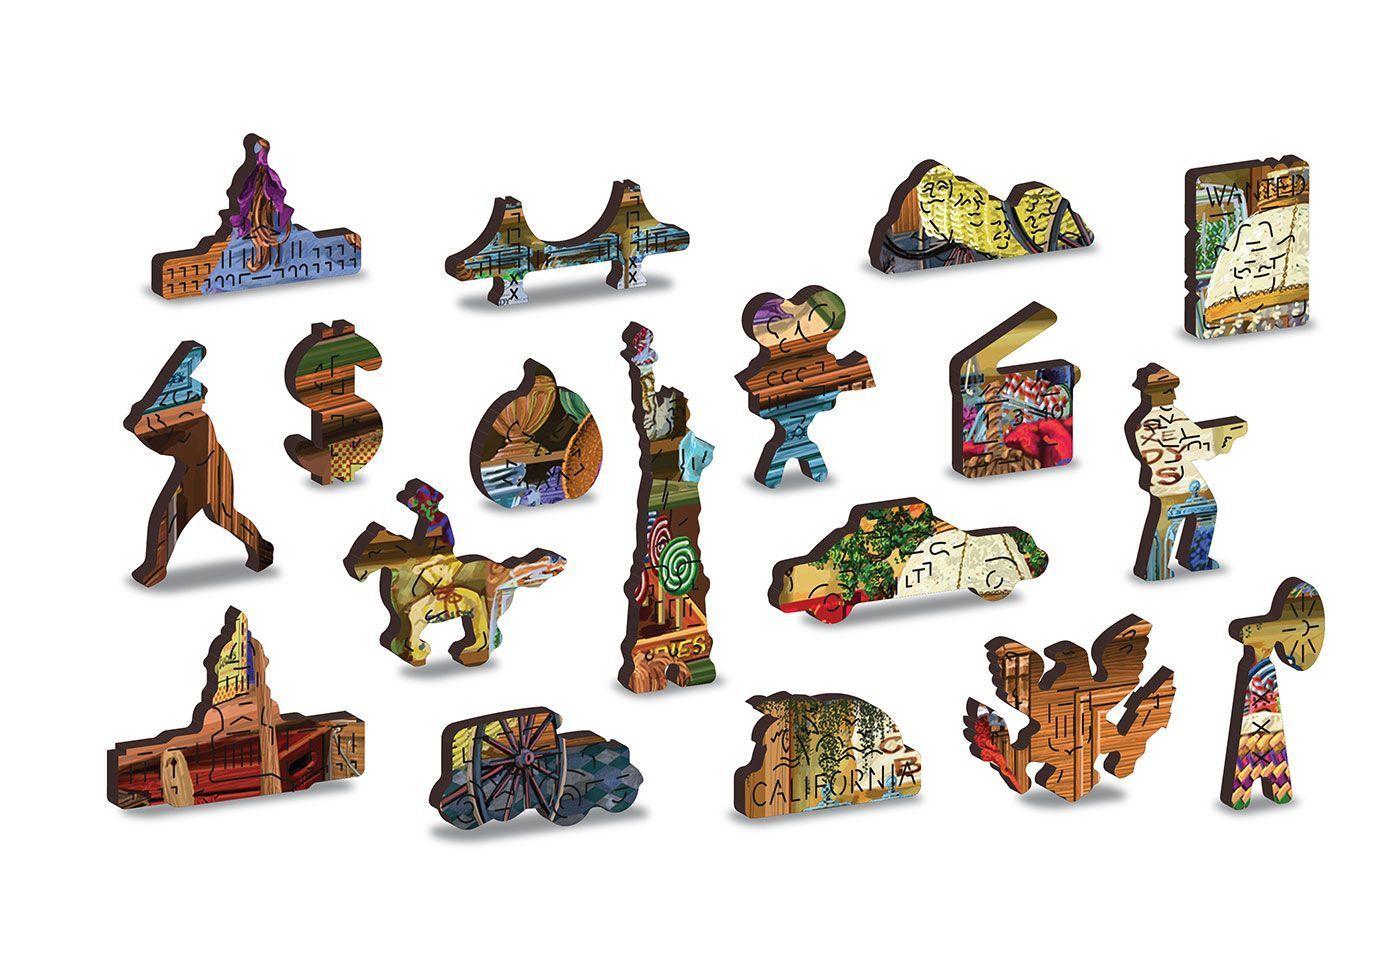 Drewniane Puzzle z figurkami - Kwieciarnia rozm. M, 200 elementów